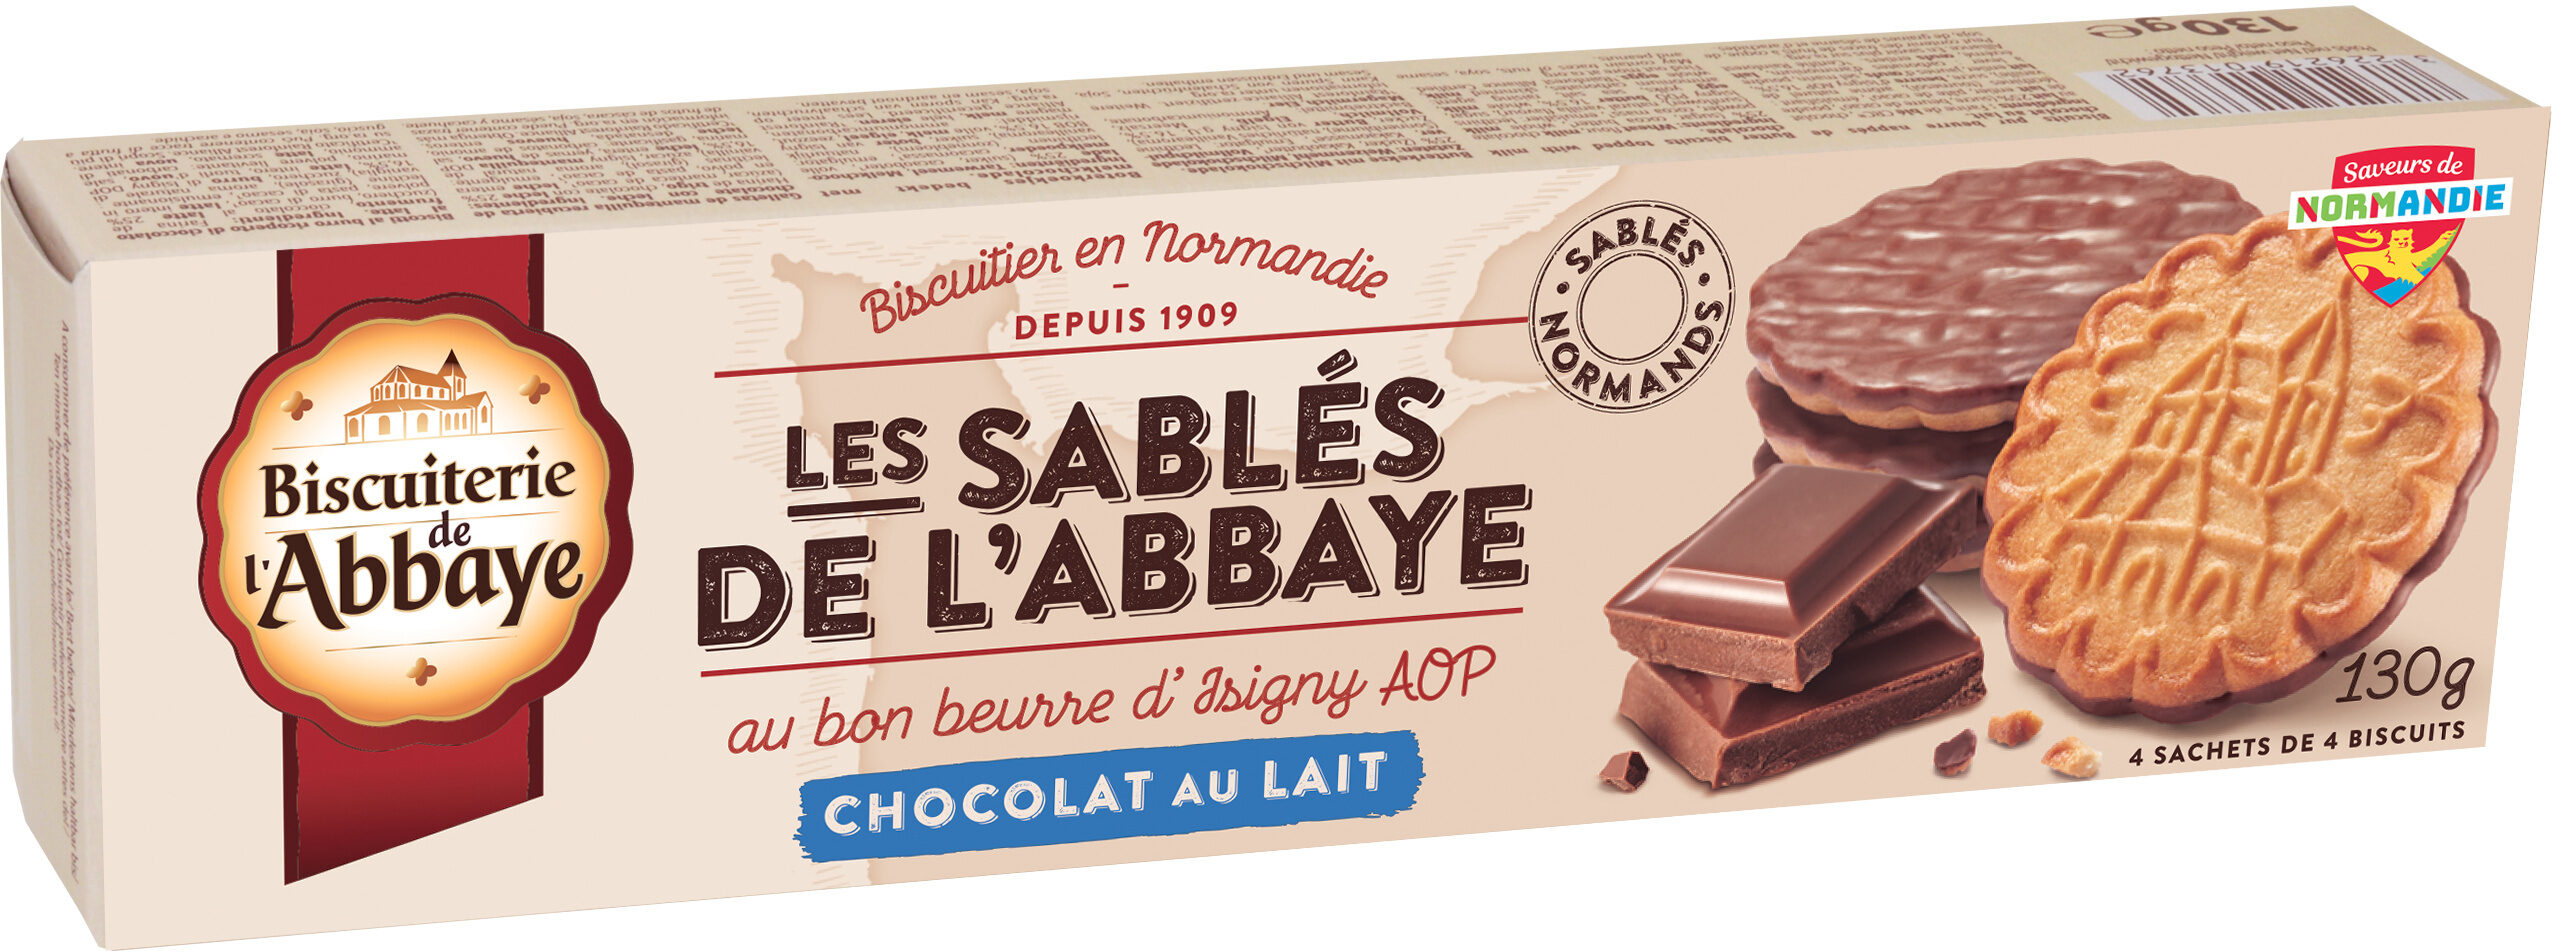 Les Sablés de l'Abbaye Chocolat au lait - Product - fr